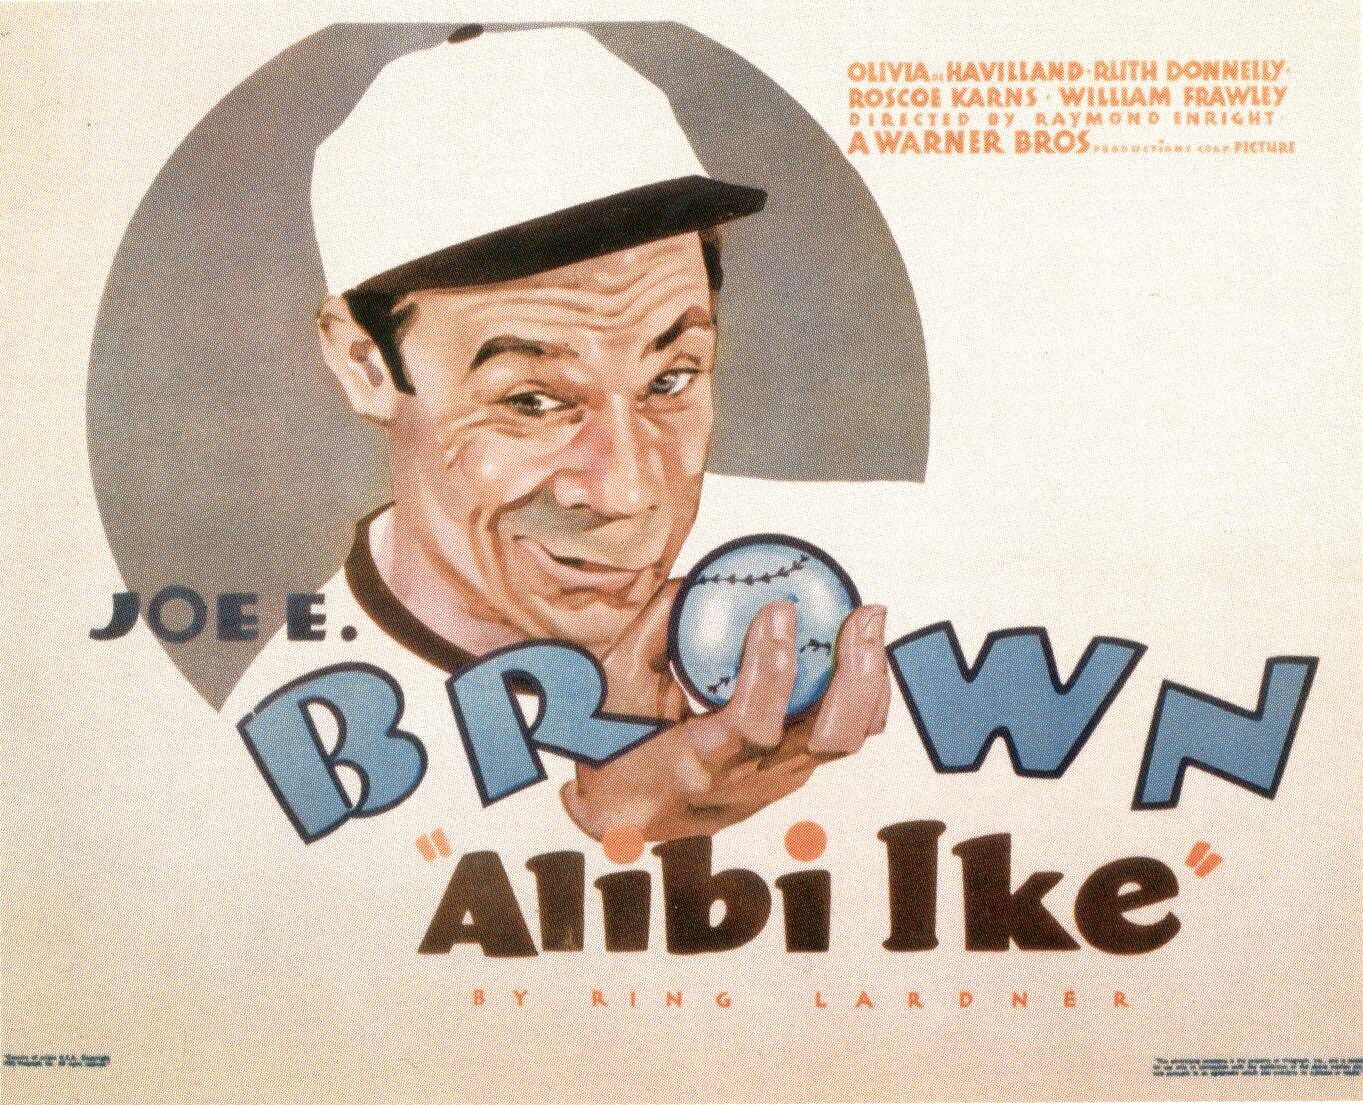 Extra Large Movie Poster Image for Alibi Ike 